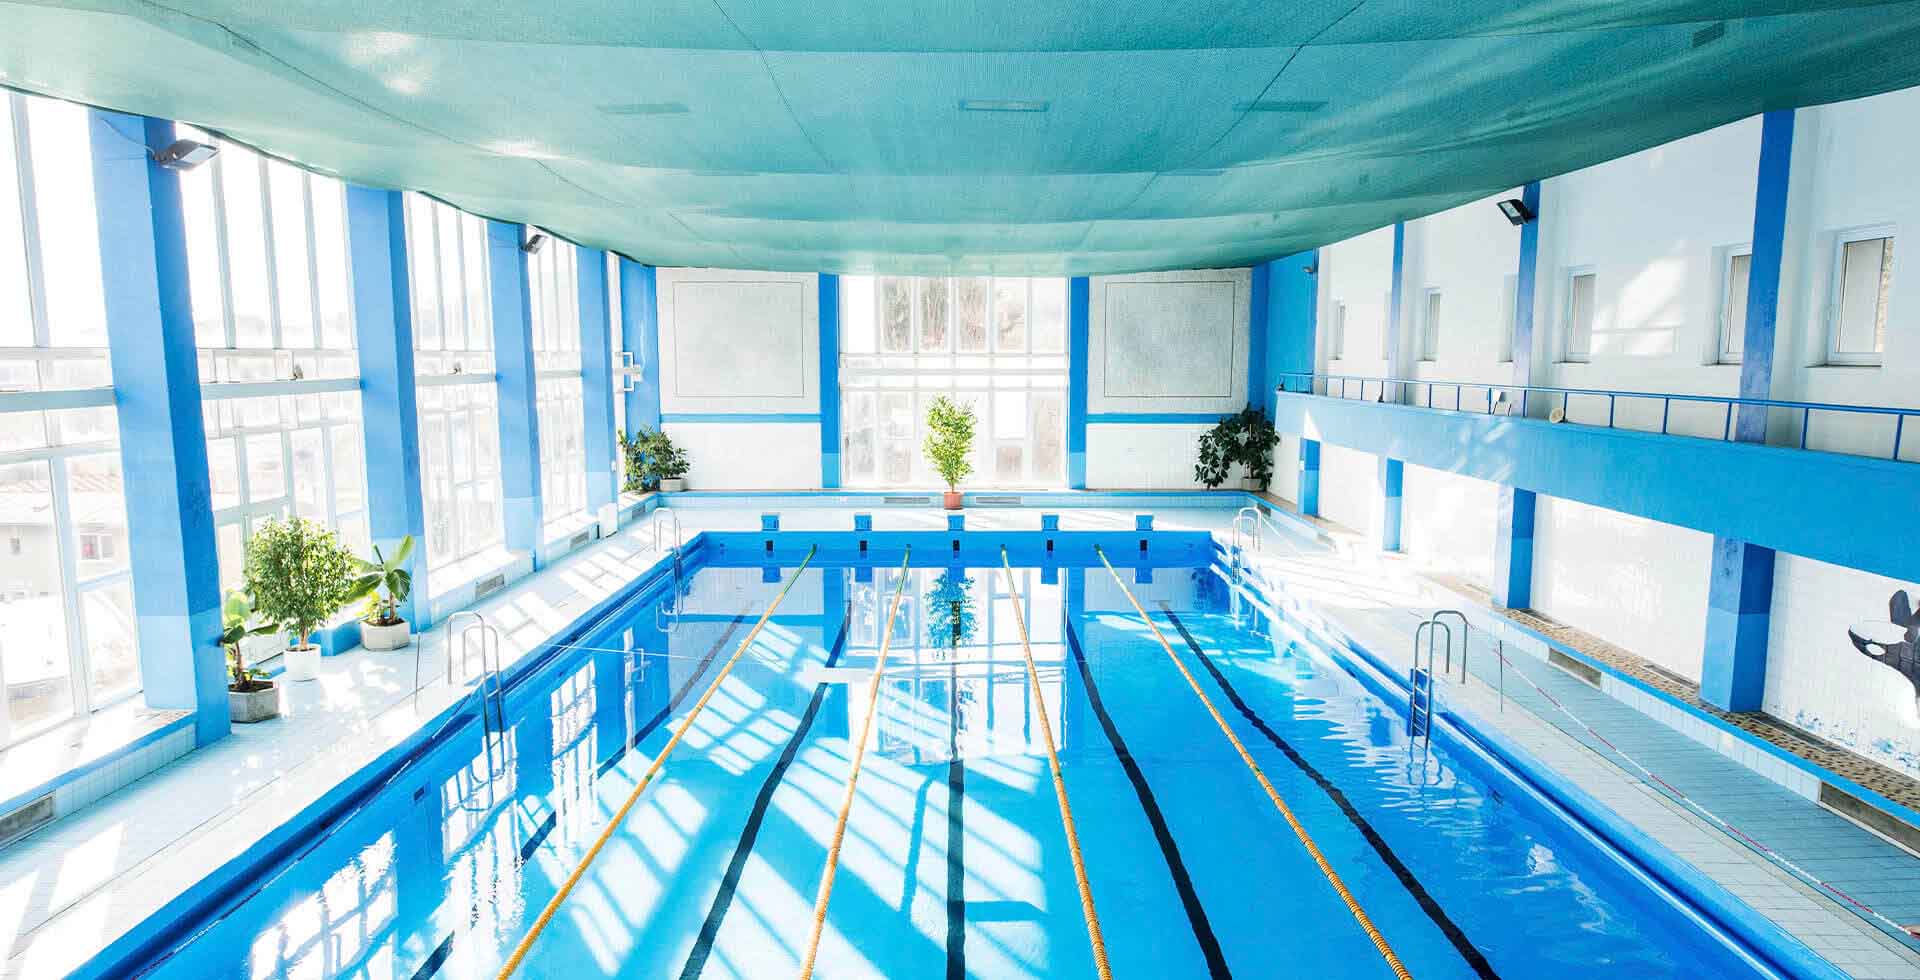 De waterbeleving van Berlijn op een hoger plan: Je reis begint in het water Olympisch Zwembad